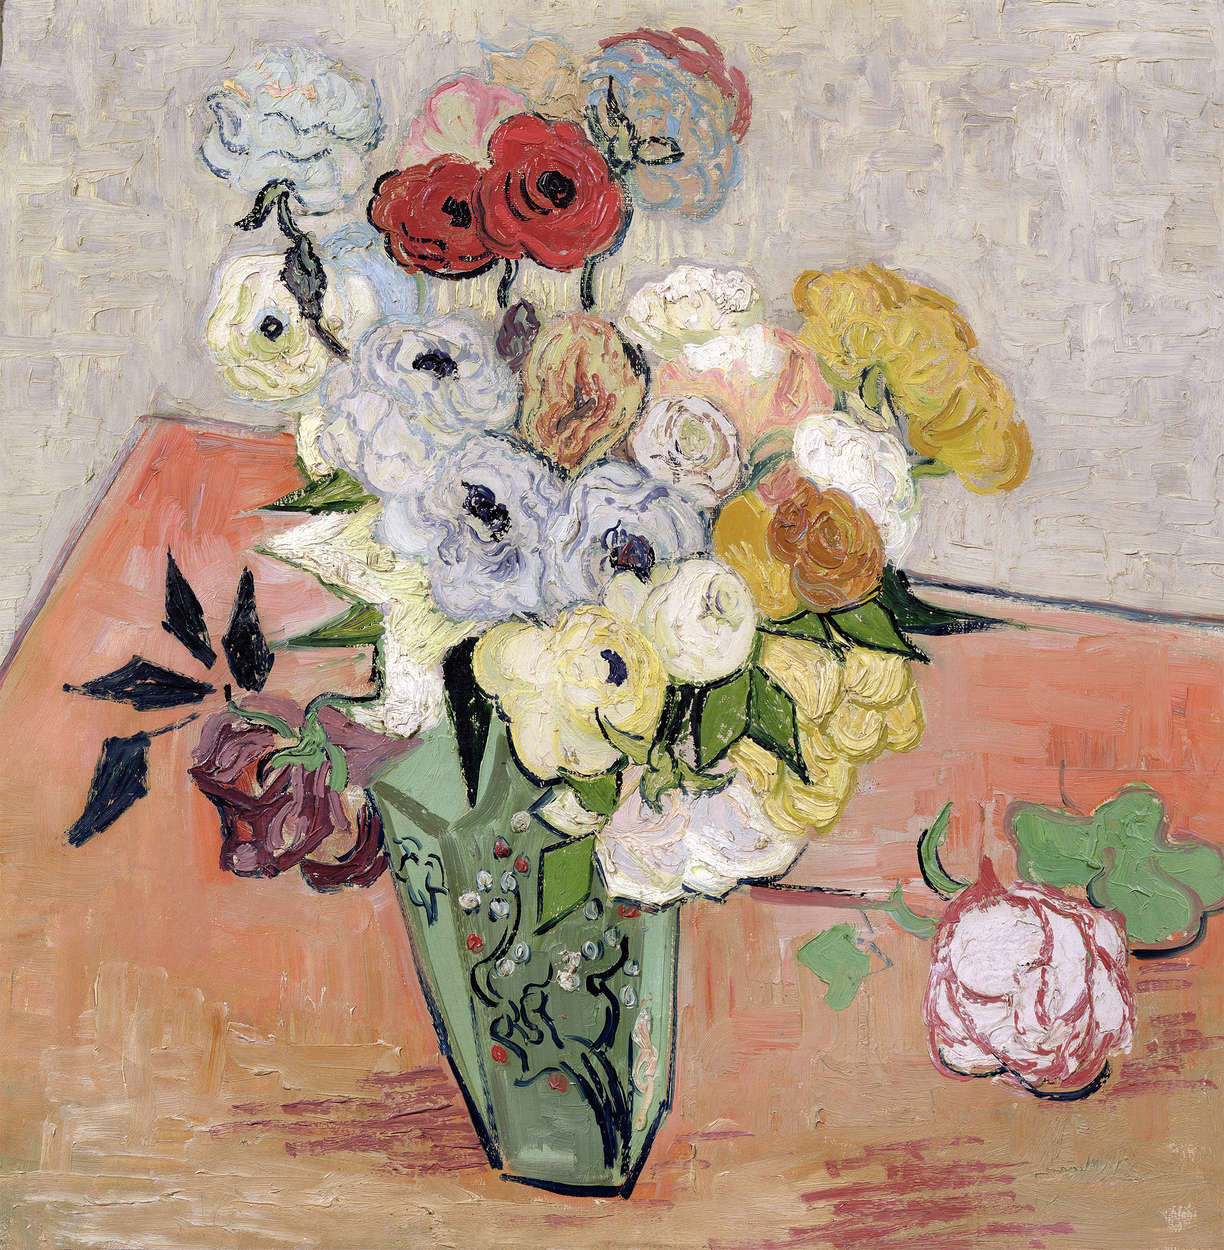             Natura morta con rose e anemoni in vaso giapponese" murale di Vincent van Gogh
        